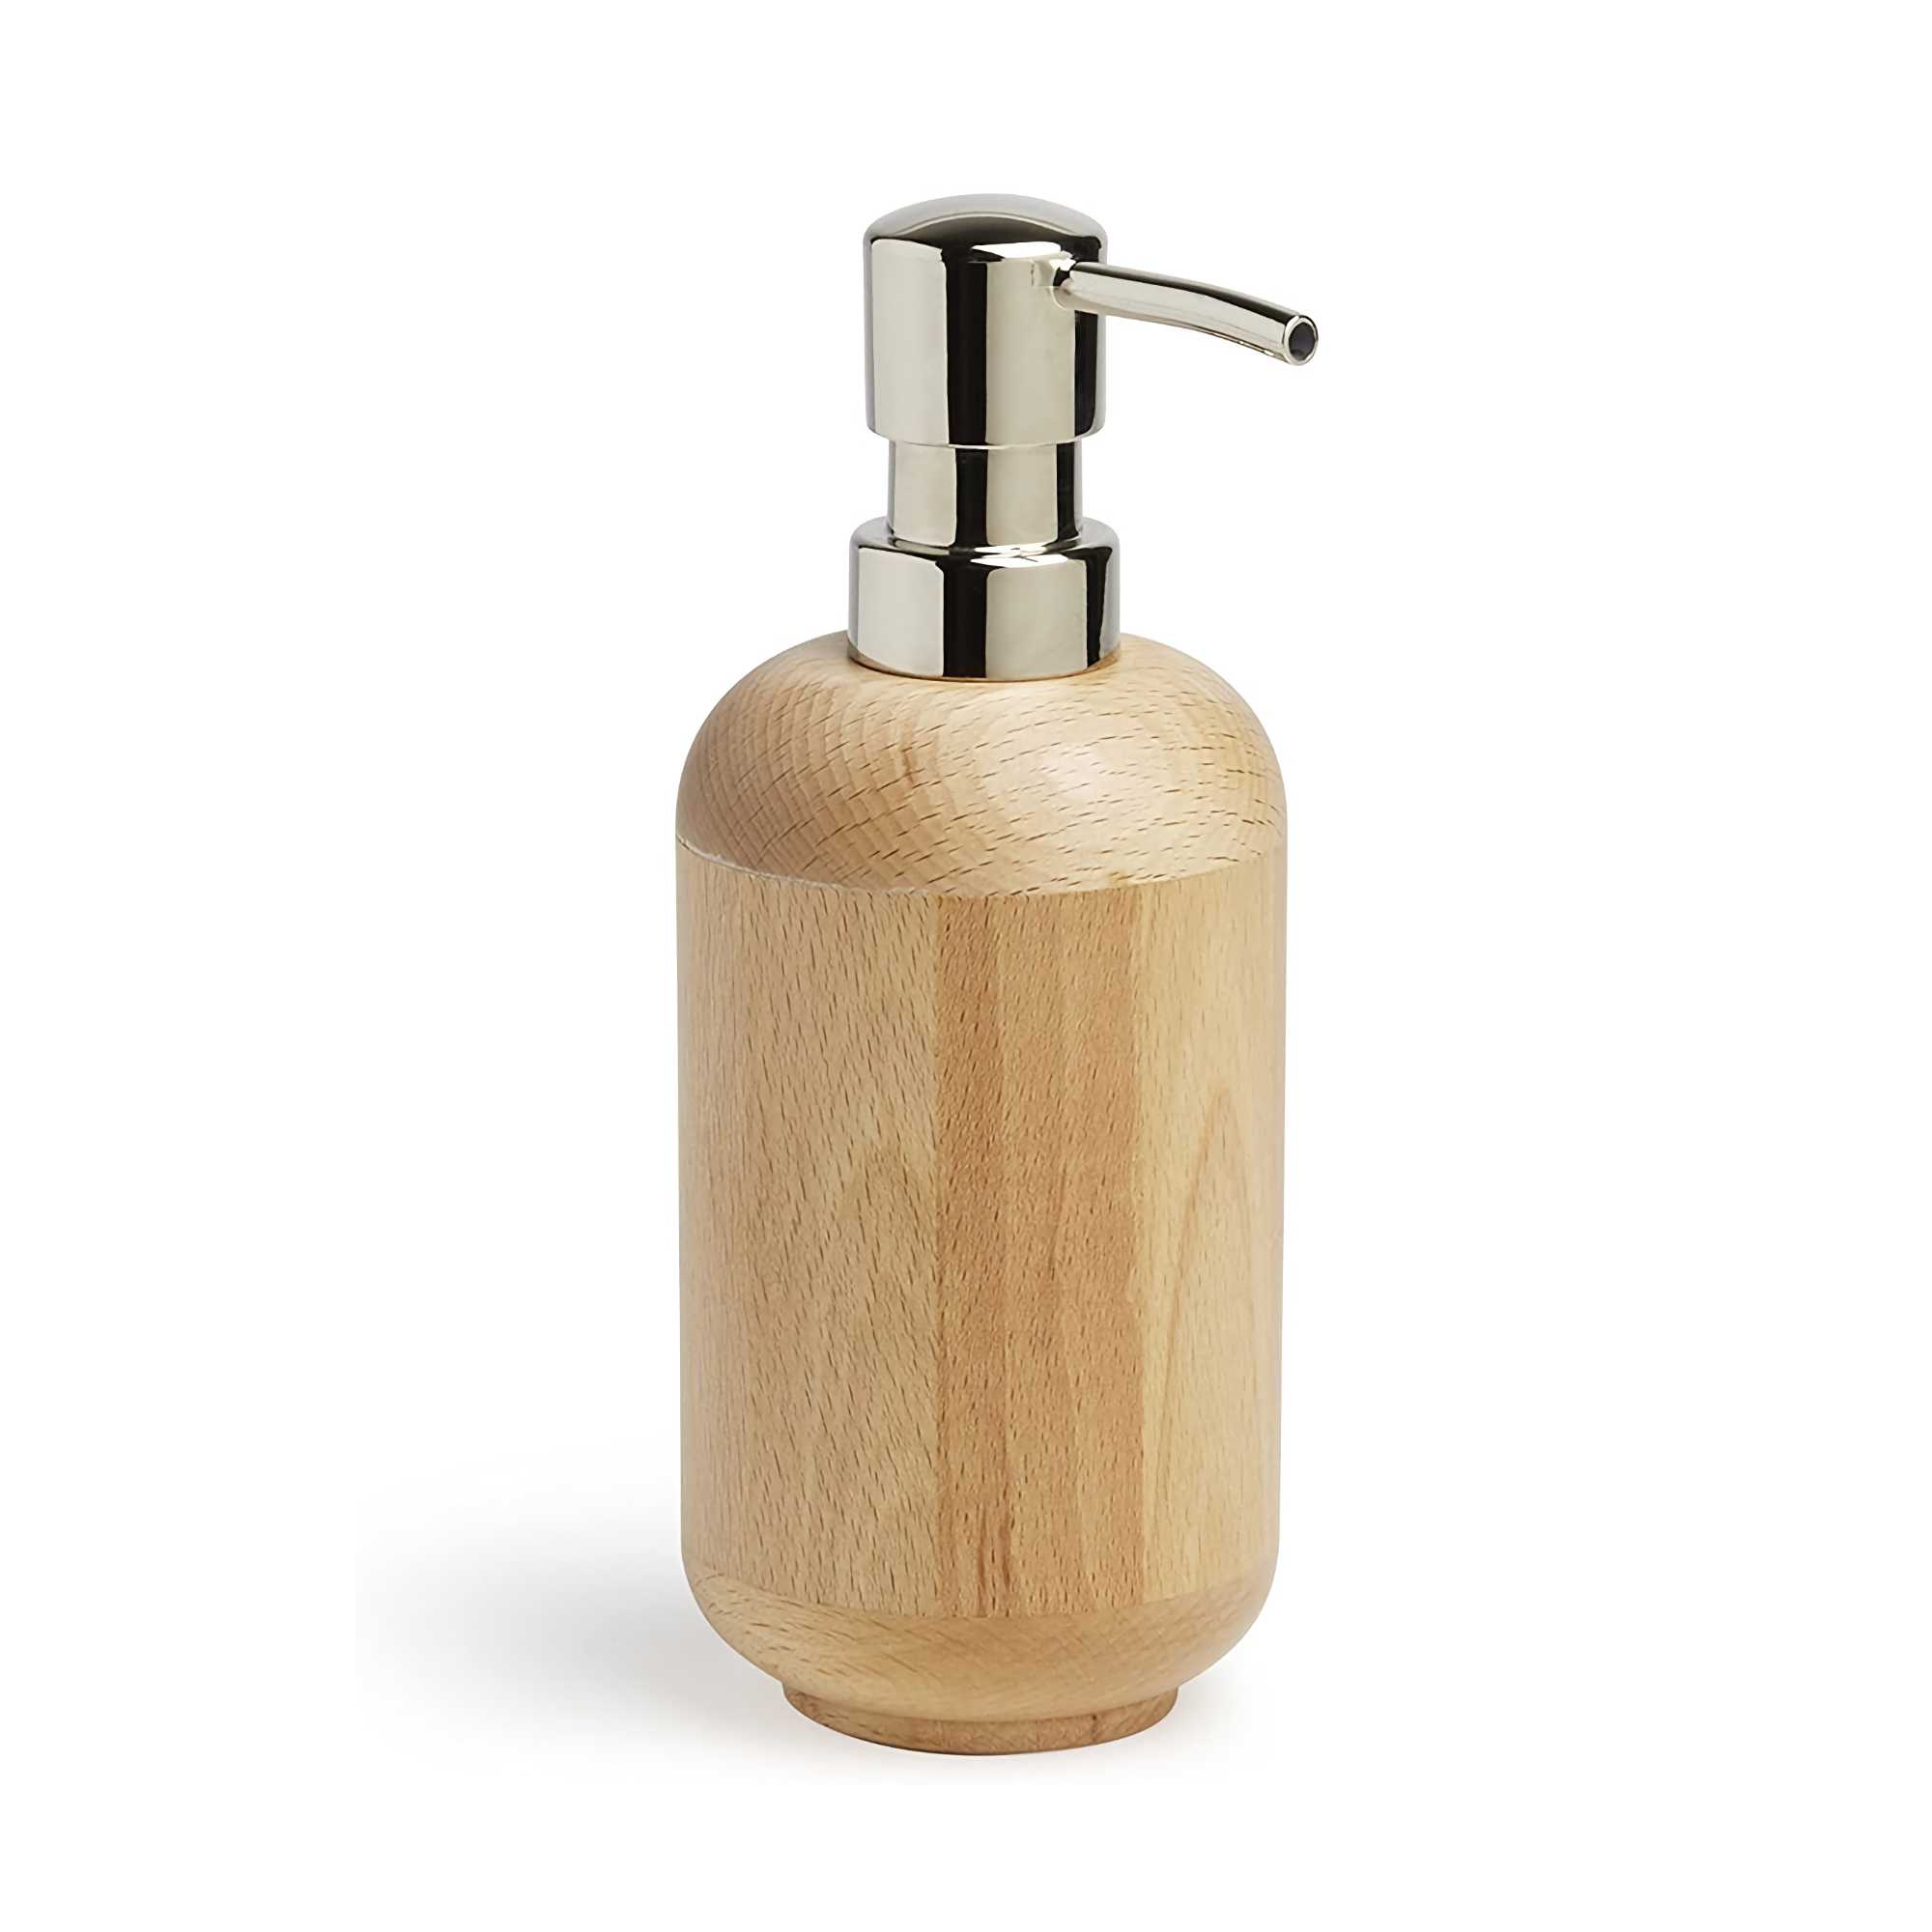 Umbra Woodland Soap Pump, natural